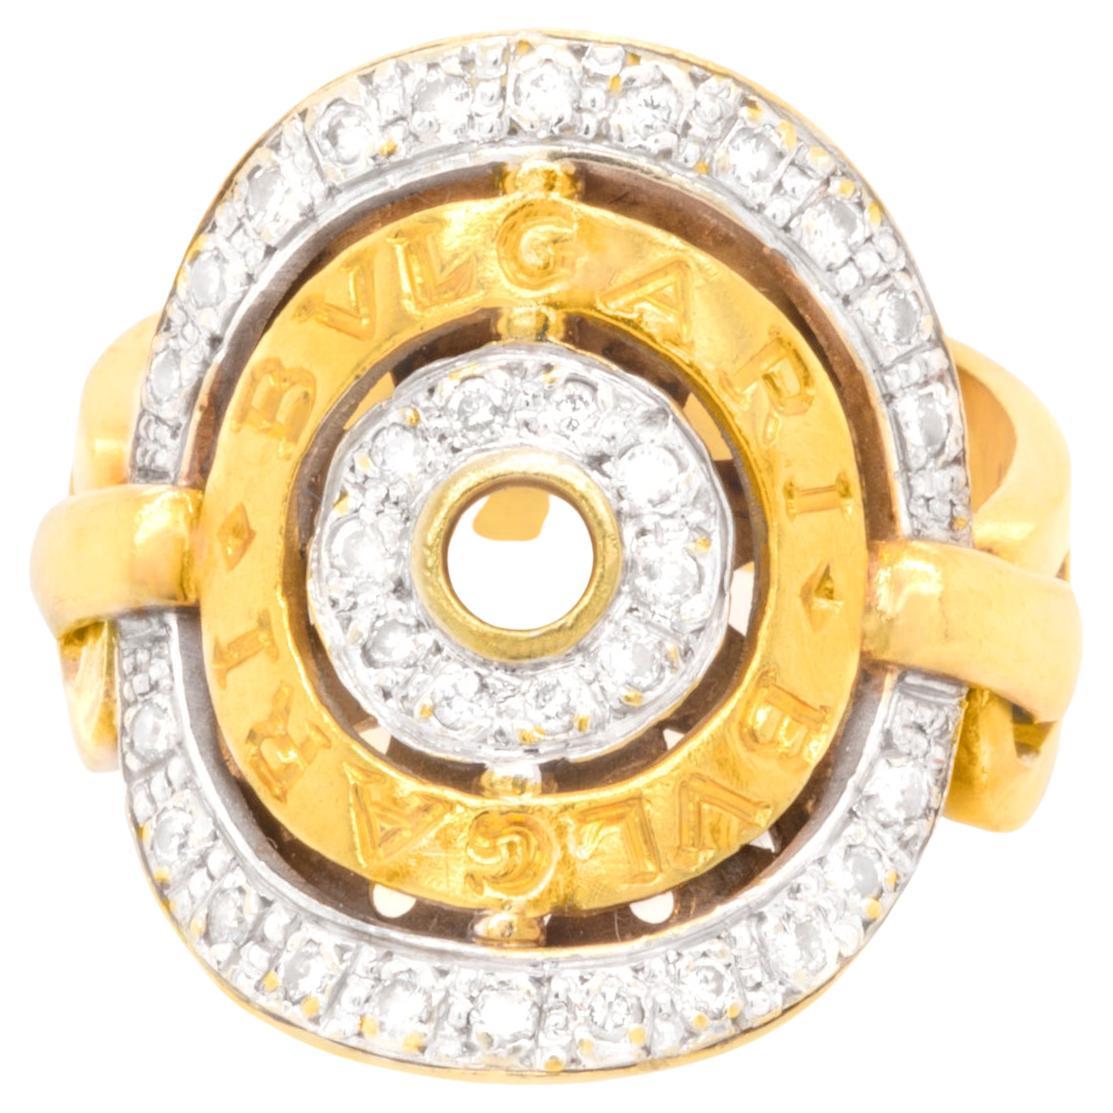 Bvlgari Diamond Ring 1.50 Carats Total 18K Gold